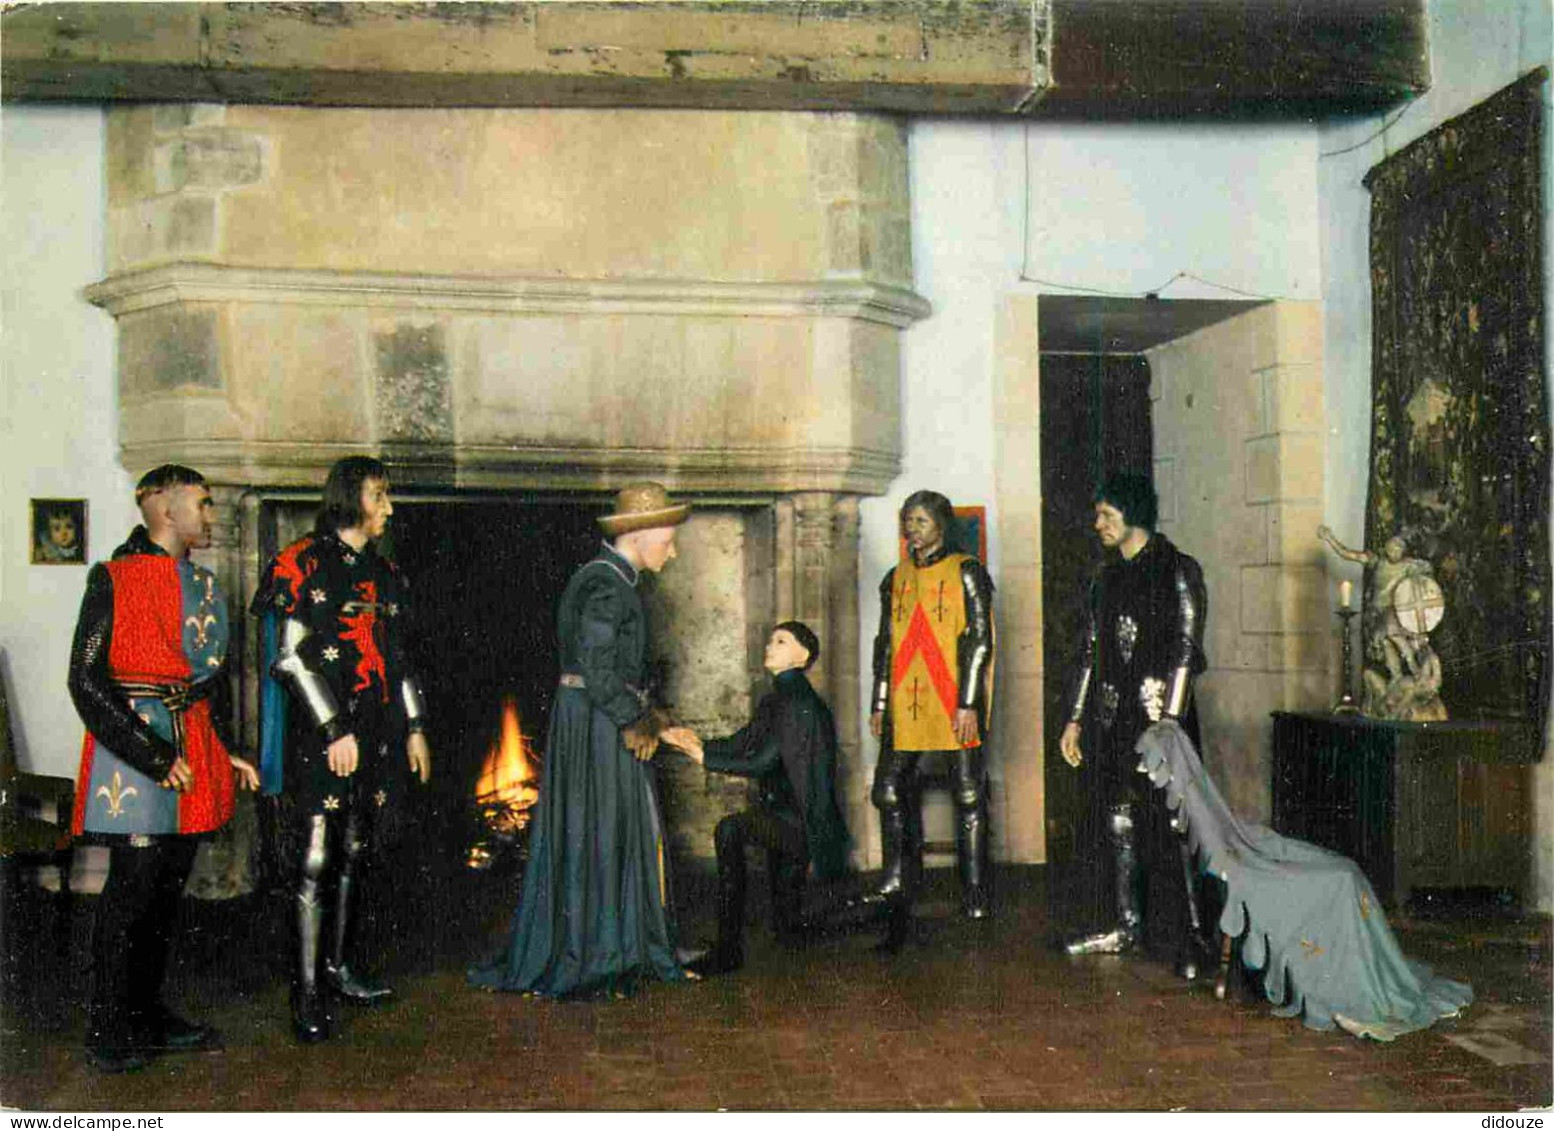 18 - Culan - Intérieur Du Château - Exposition Jeanne D'Arc Charles VII Et La Cour De Bourges - Personnages De Cire - Hi - Culan